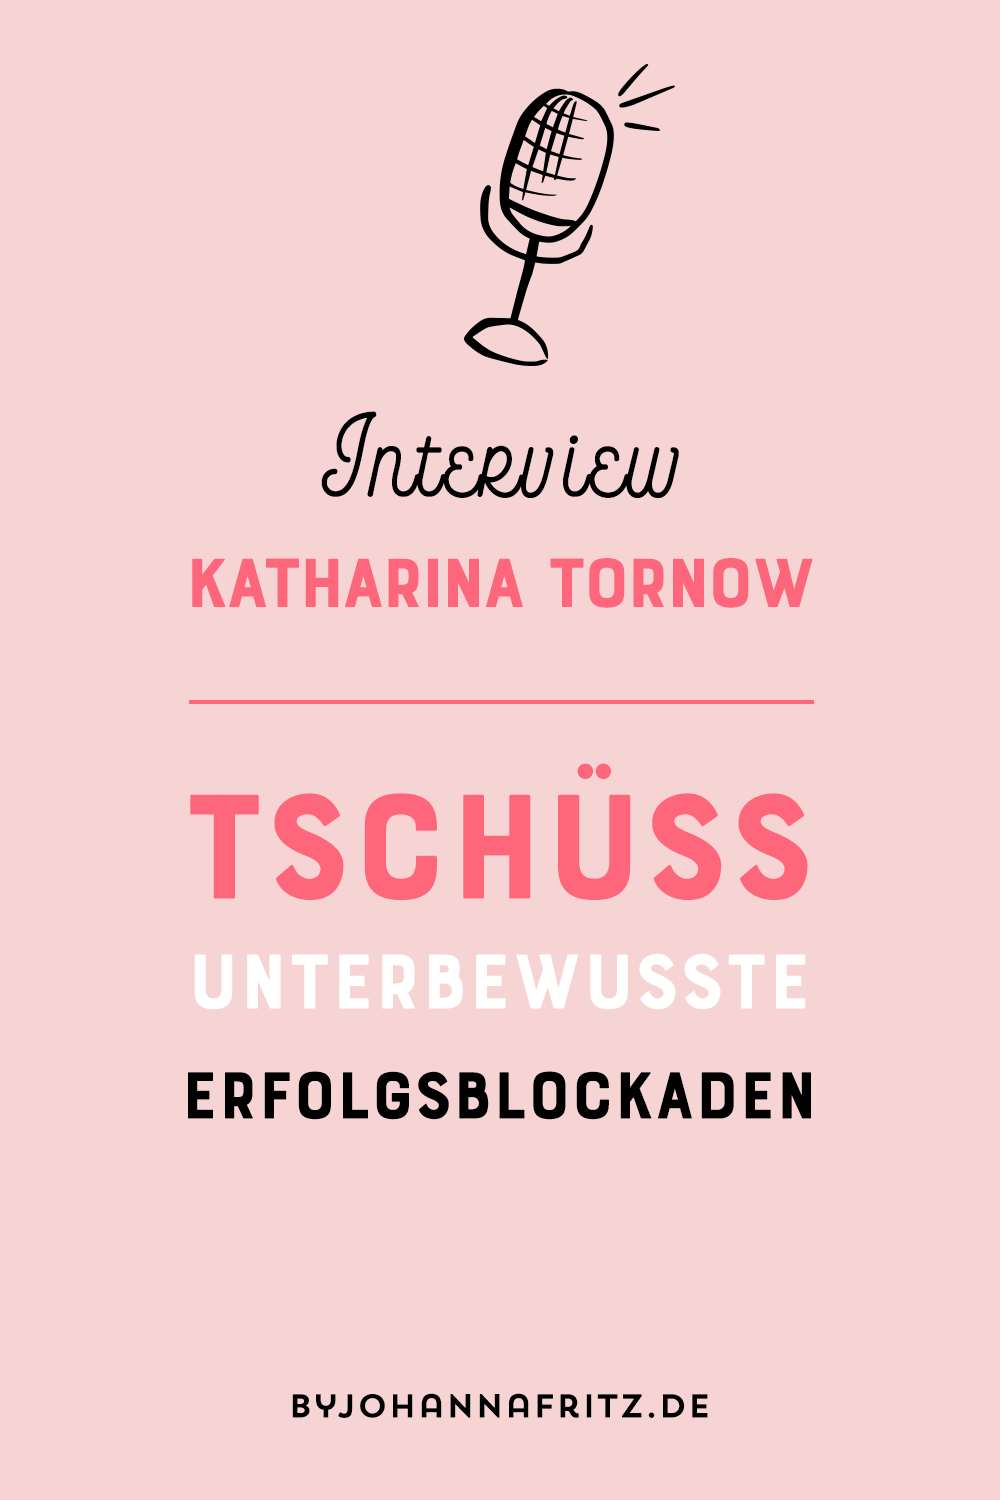 Tschüß Erfolgsblockaden das Interview mit Katharina Tornow by Johanna Fritz